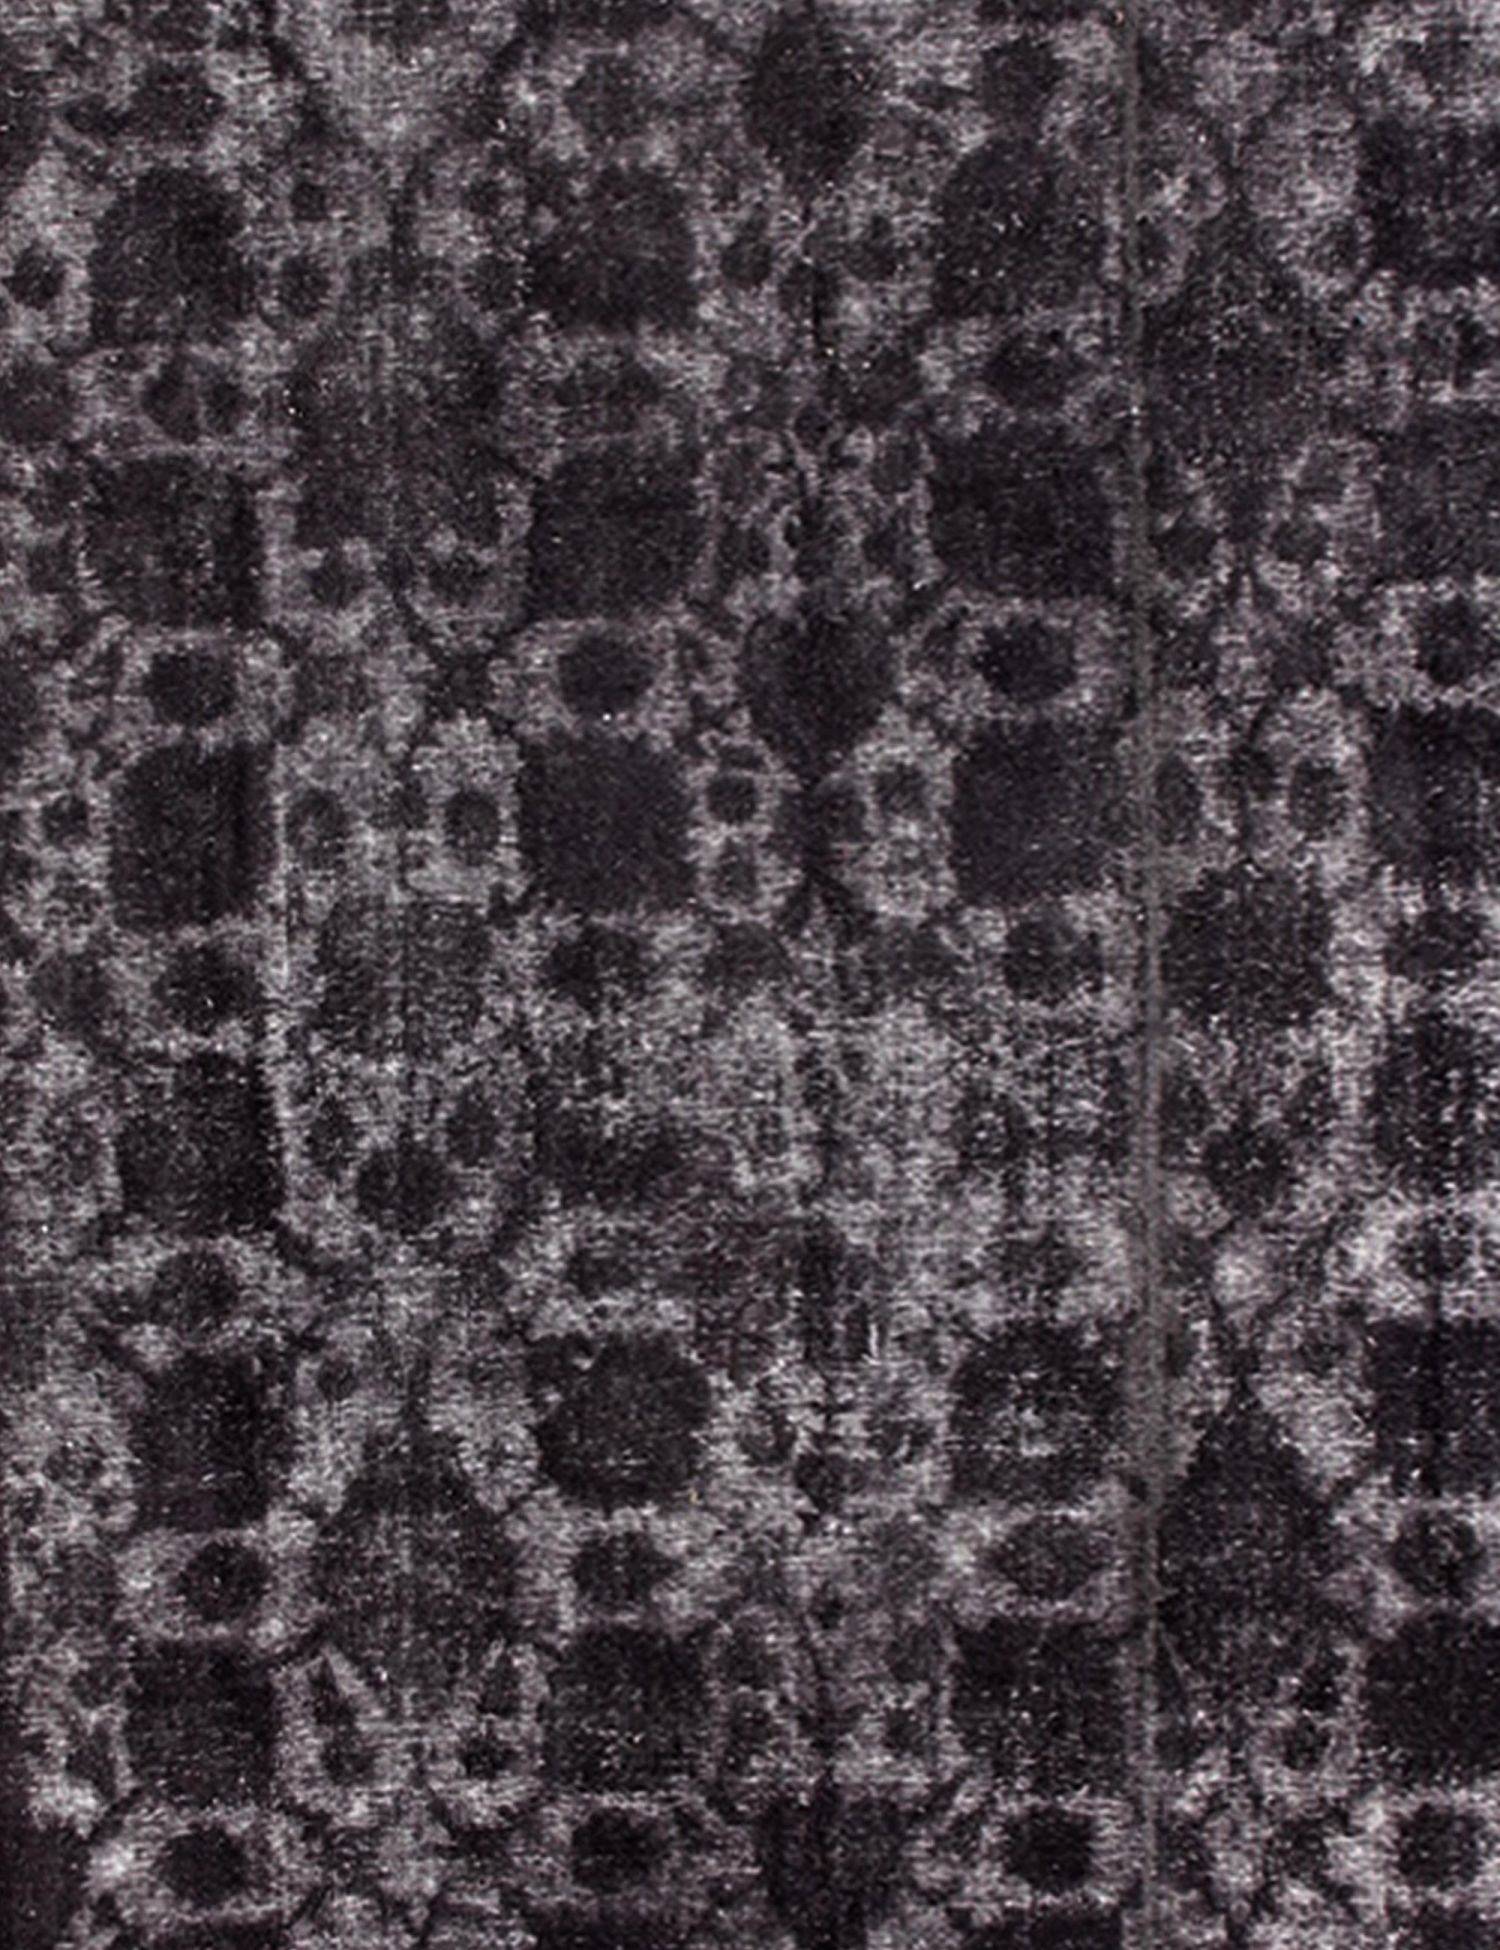 Persian Vintage Carpet  black <br/>380 x 300 cm